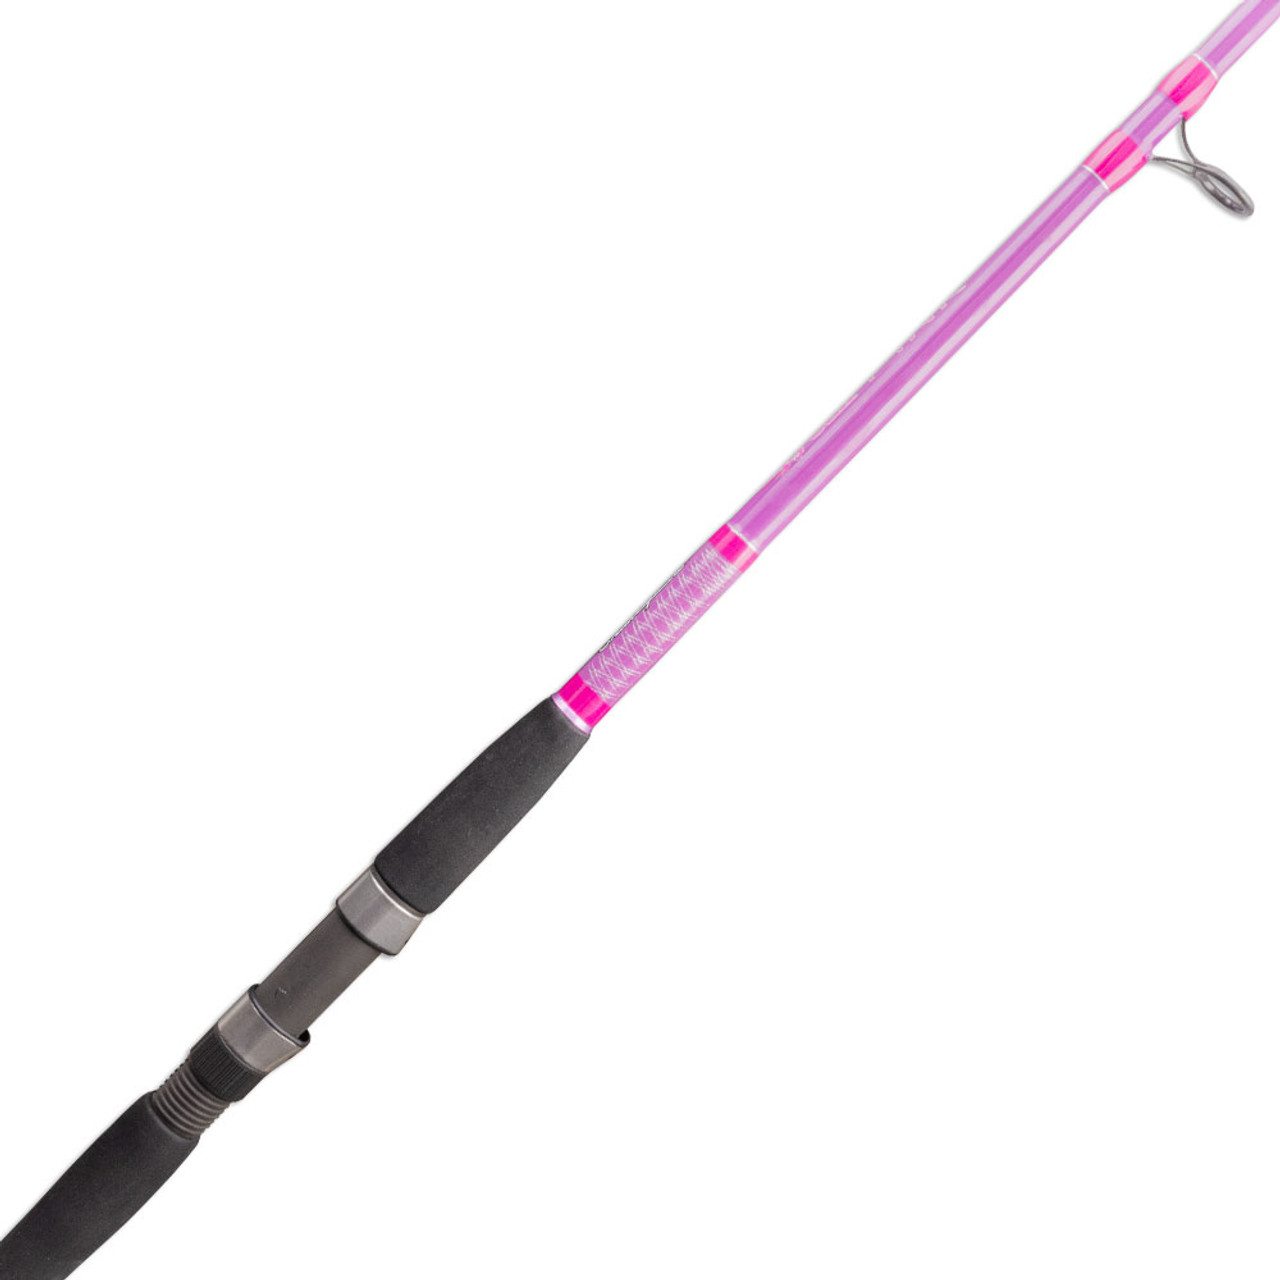 Ugly Stik Pink Fishing Rod for Ladies